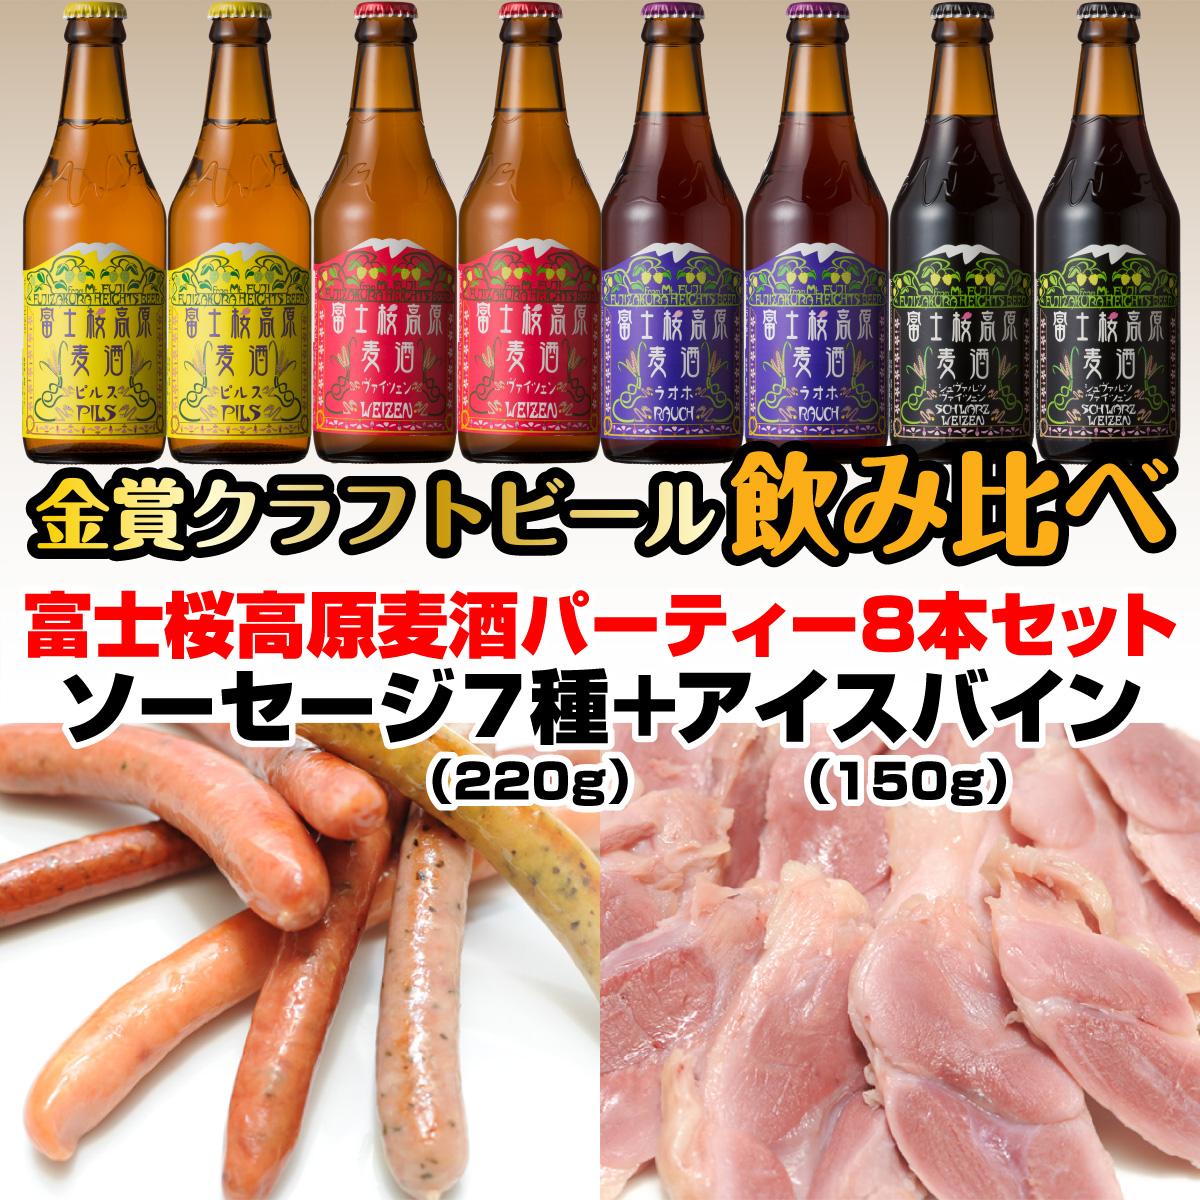 富士桜高原麦酒パーティー8本セット 金賞クラフトビール飲み比べ